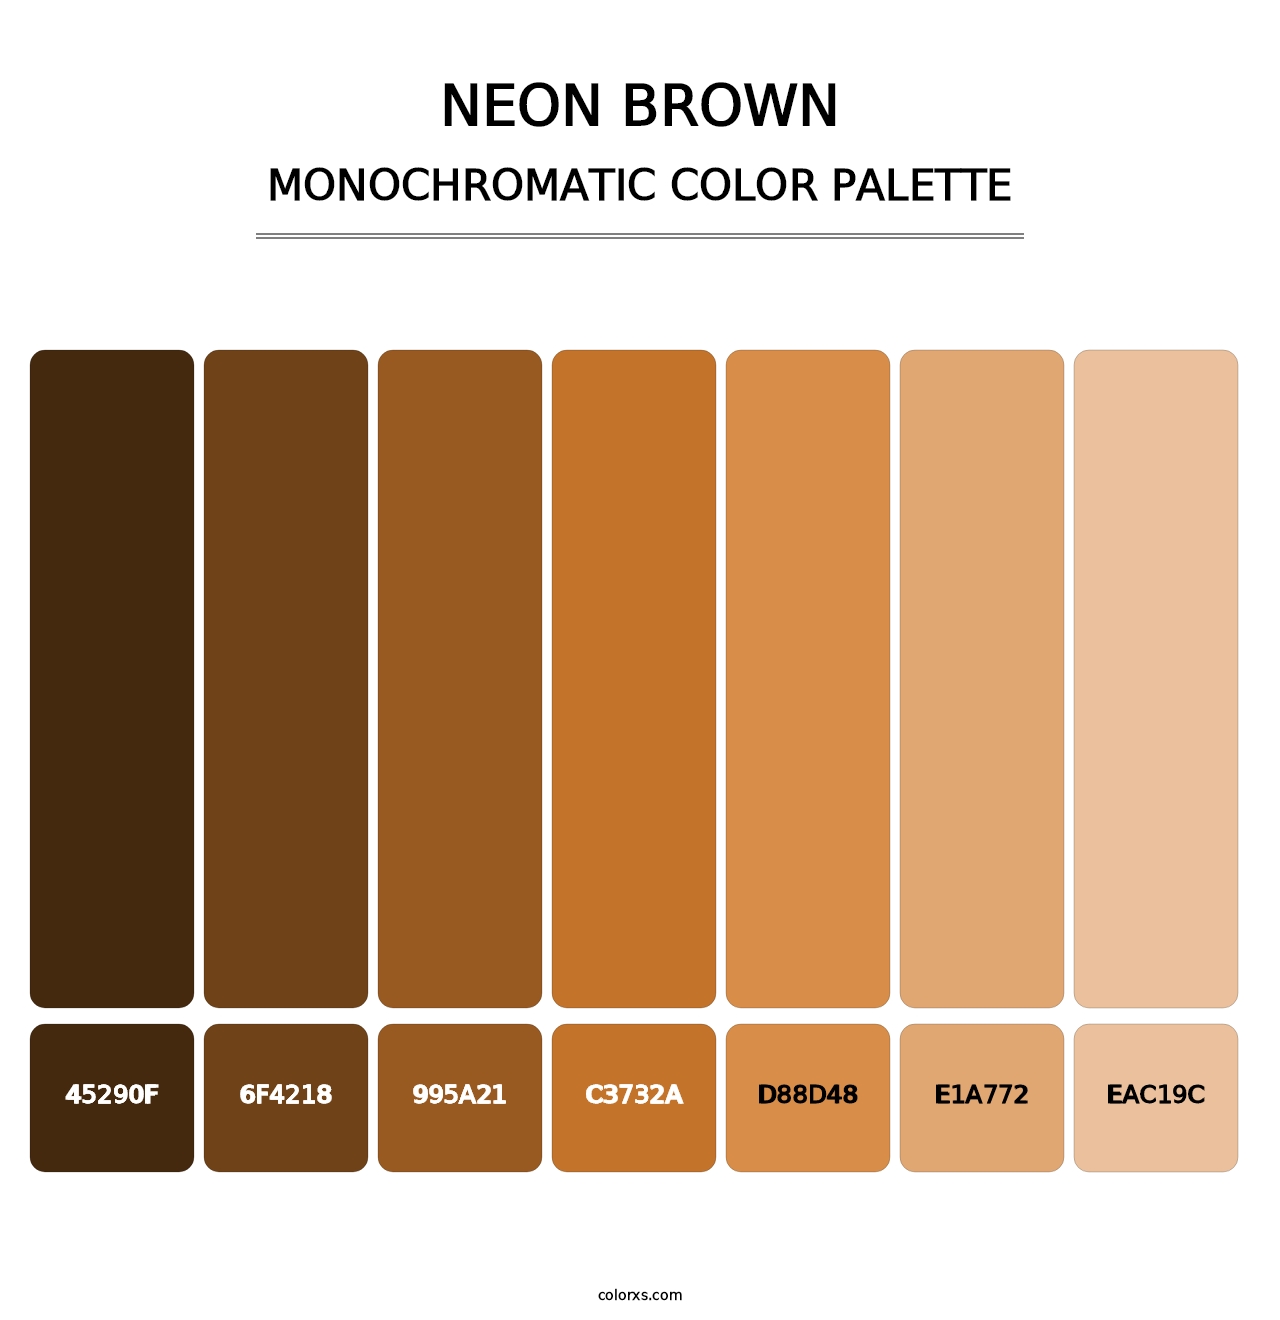 Neon Brown - Monochromatic Color Palette